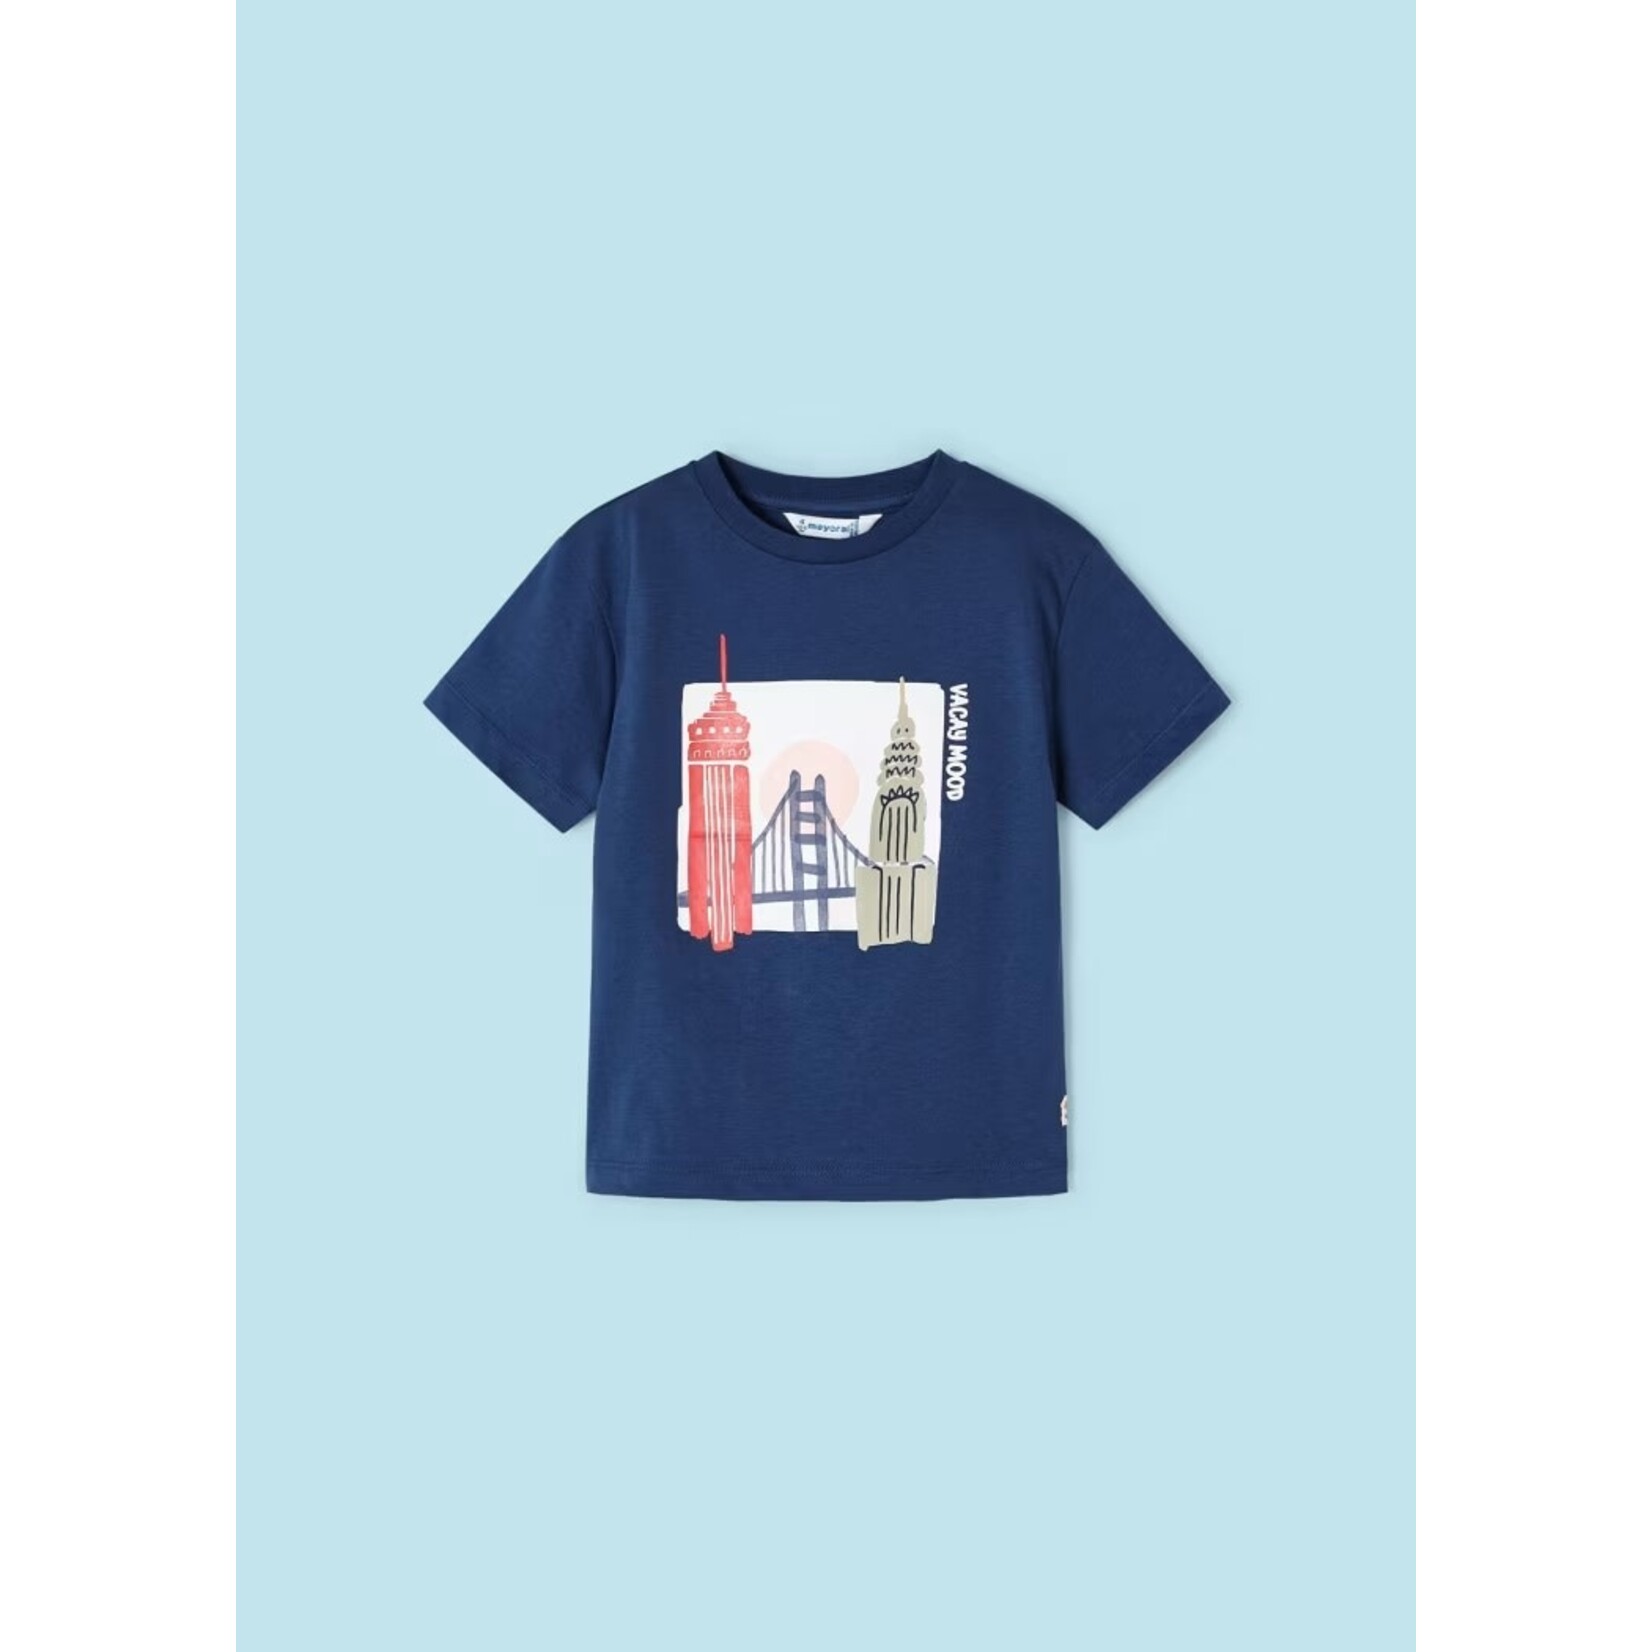 Mayoral MAYORAL - T-shirt à manches courtes marine avec imprimé de monuments 'Vacay Mood'